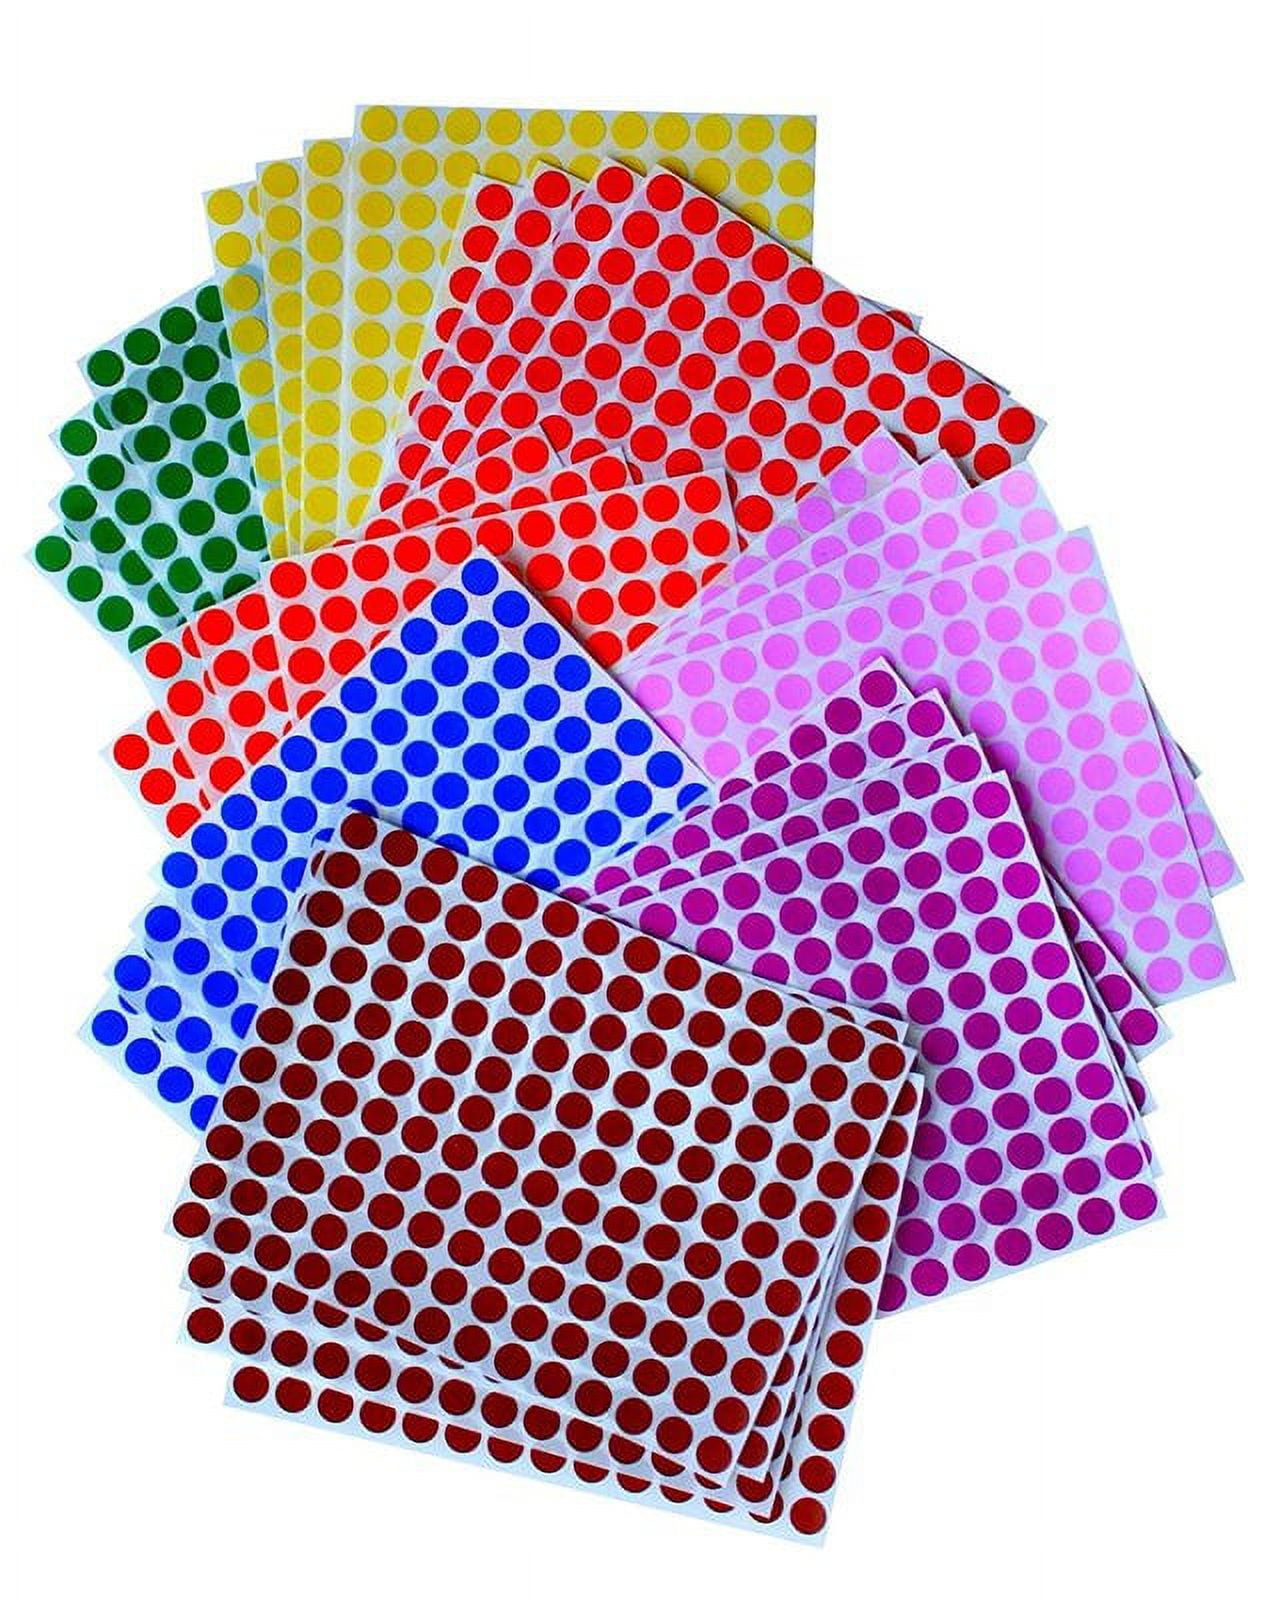 Round 50 Cent Stickers (2 inch, 300 Stickers per Roll, Dark Pink, 10 Rolls)  for Retail, Garage Sale or Yard Sales 